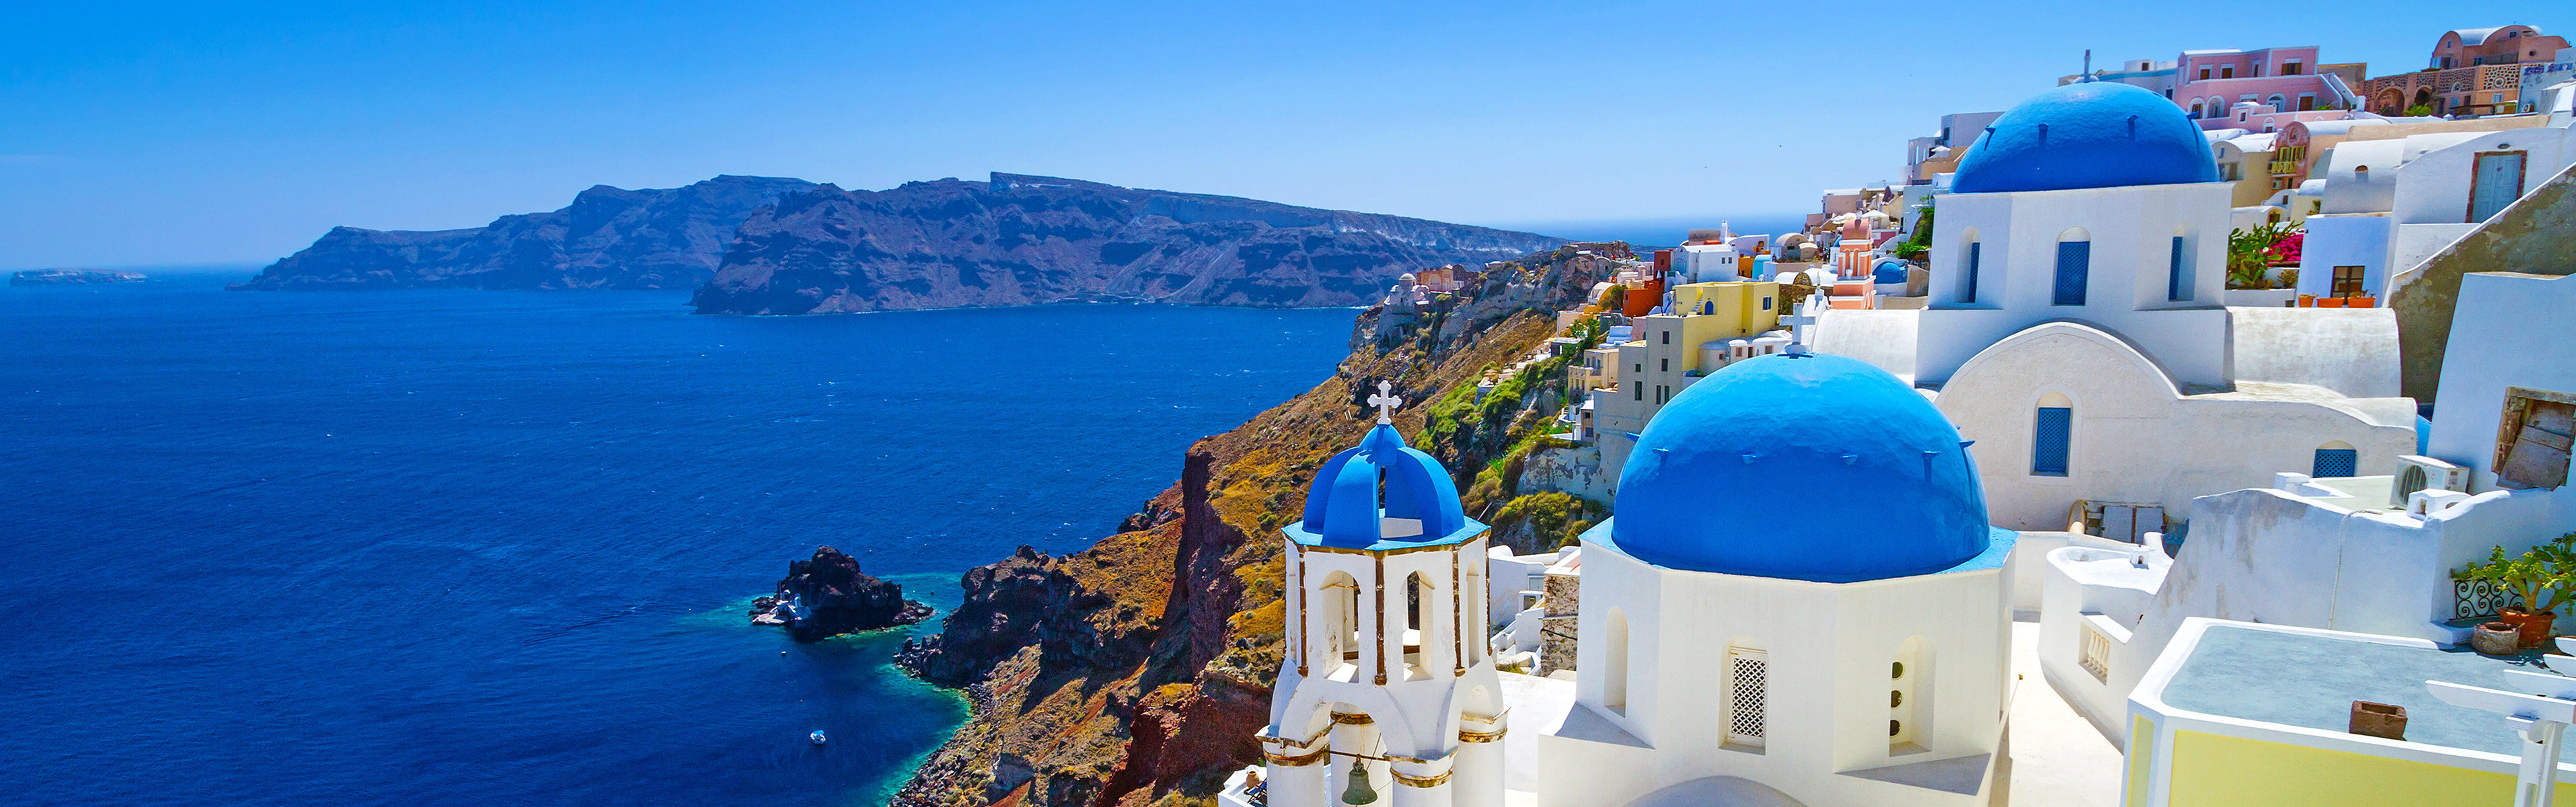 Горящие туры и путевки в Грецию, дешевые цены на отдых в Греции